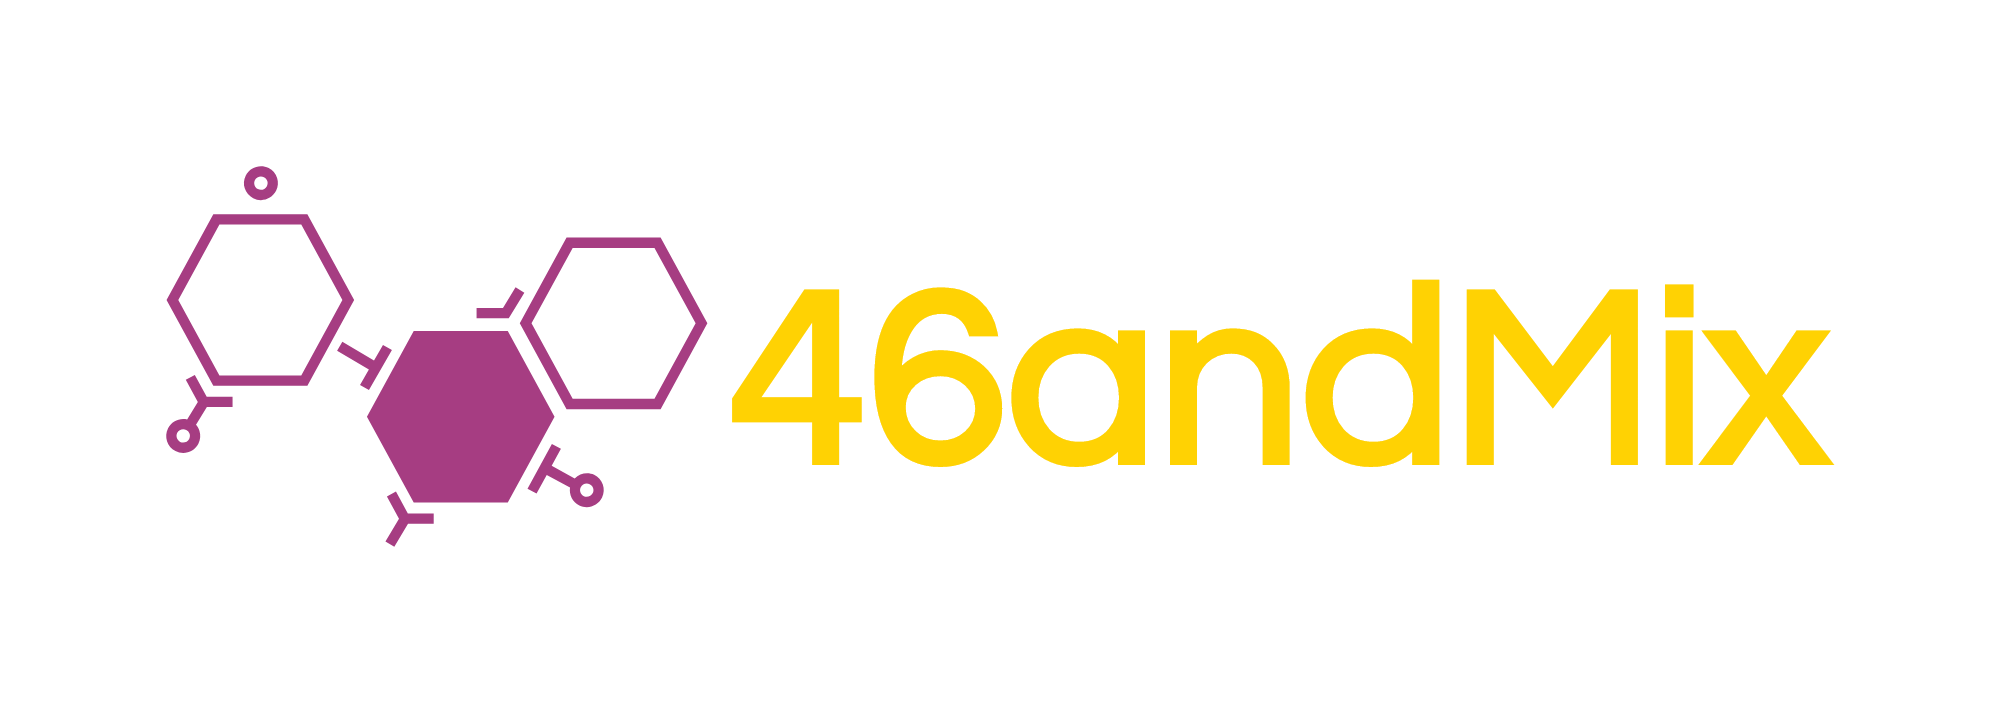 46andMix